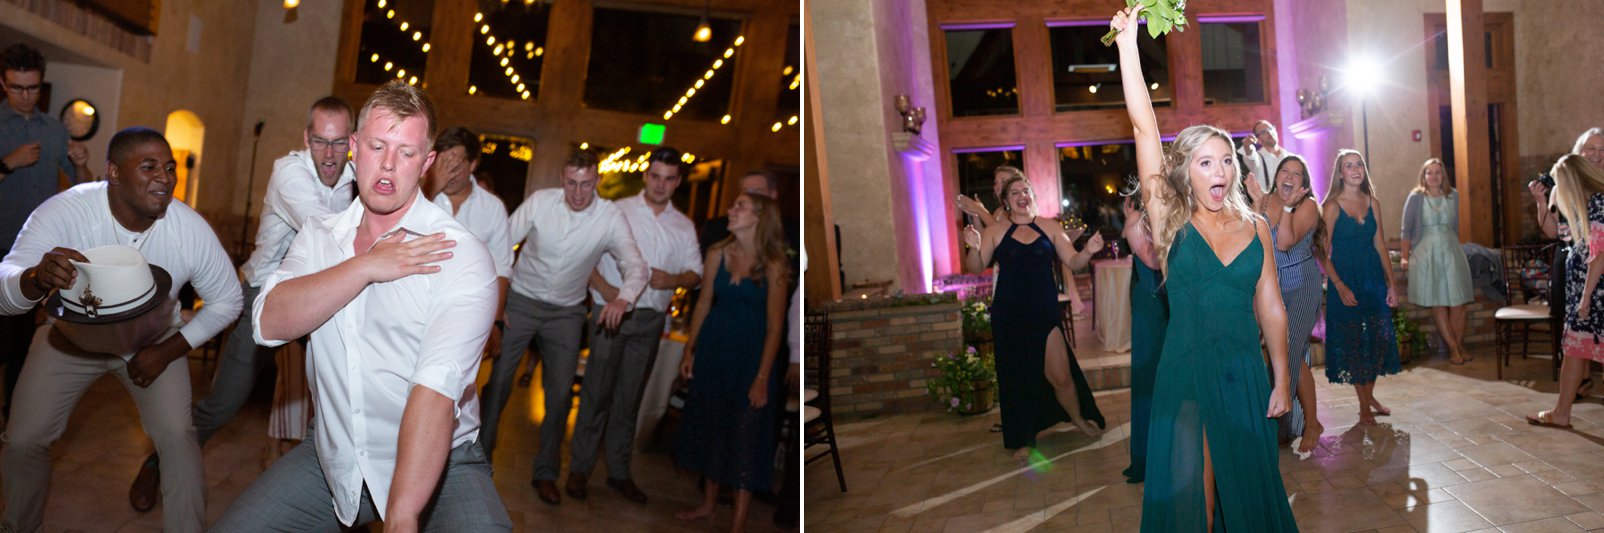 reception dancing at della terra wedding